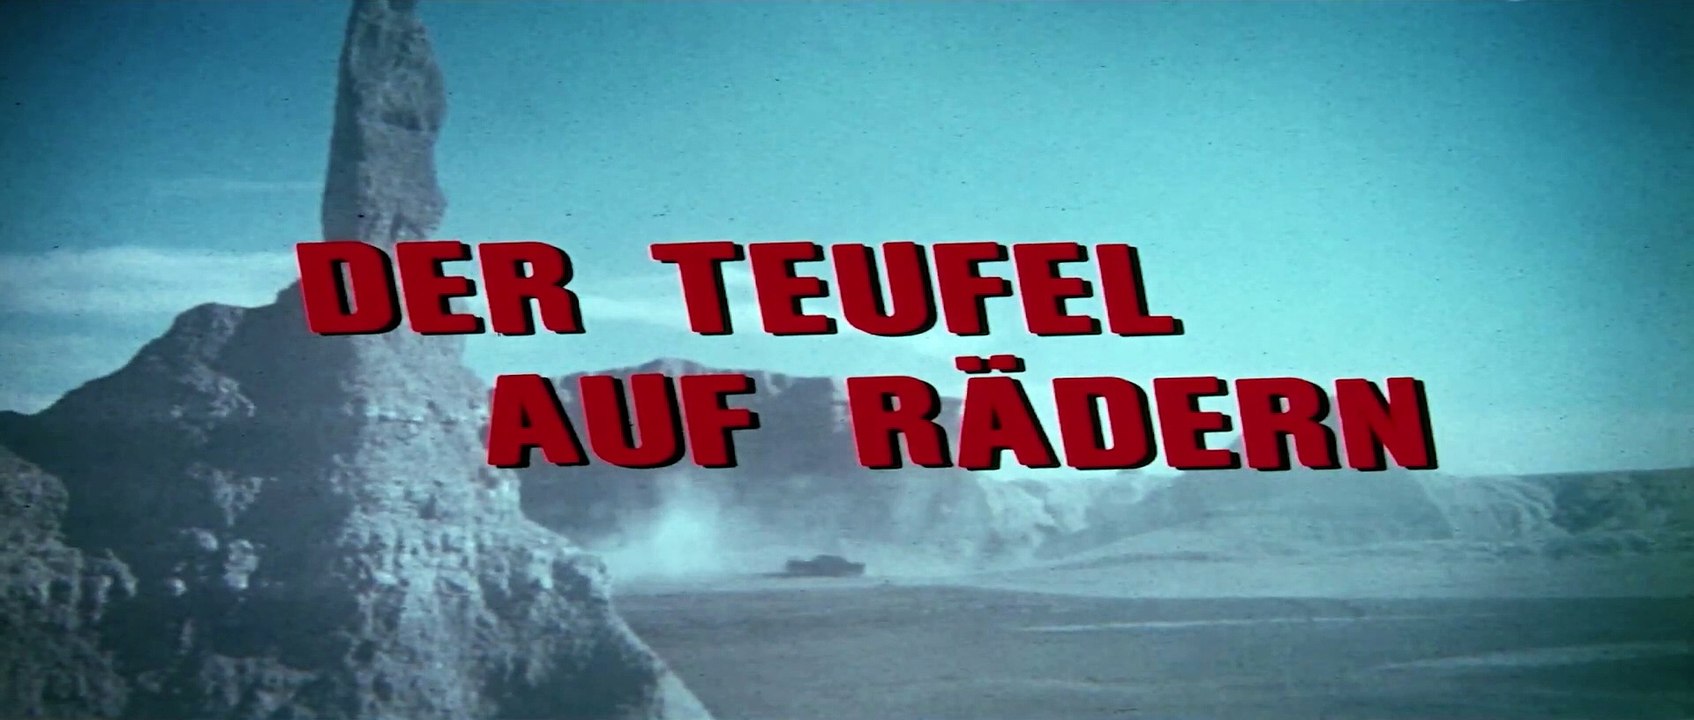 Der Teufel auf Rädern | movie | 1977 | Official Trailer